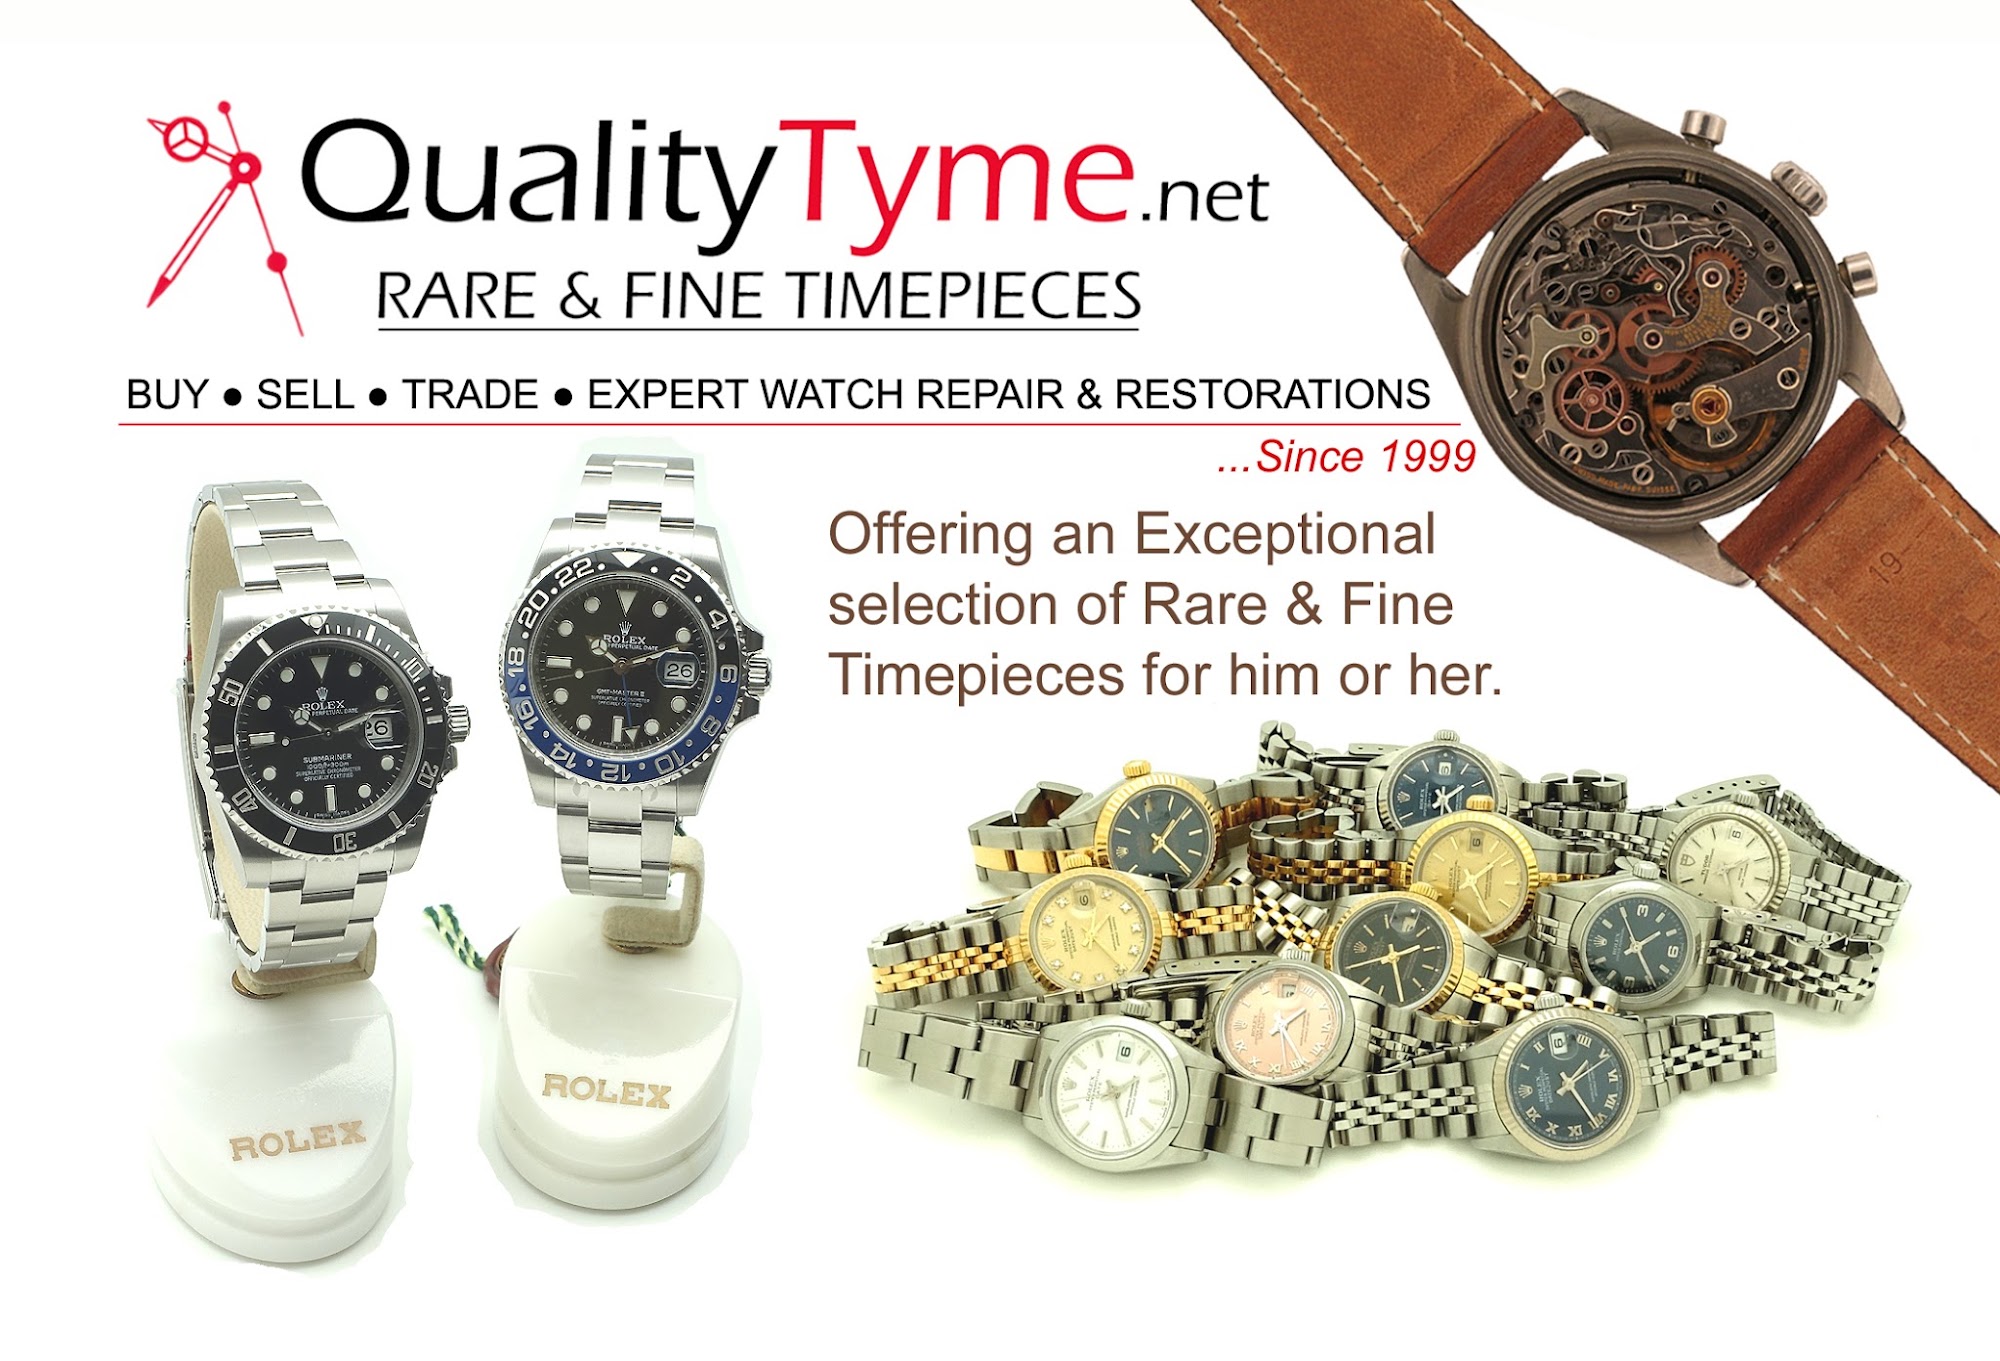 Quality Tyme Rare & Fine Timepieces